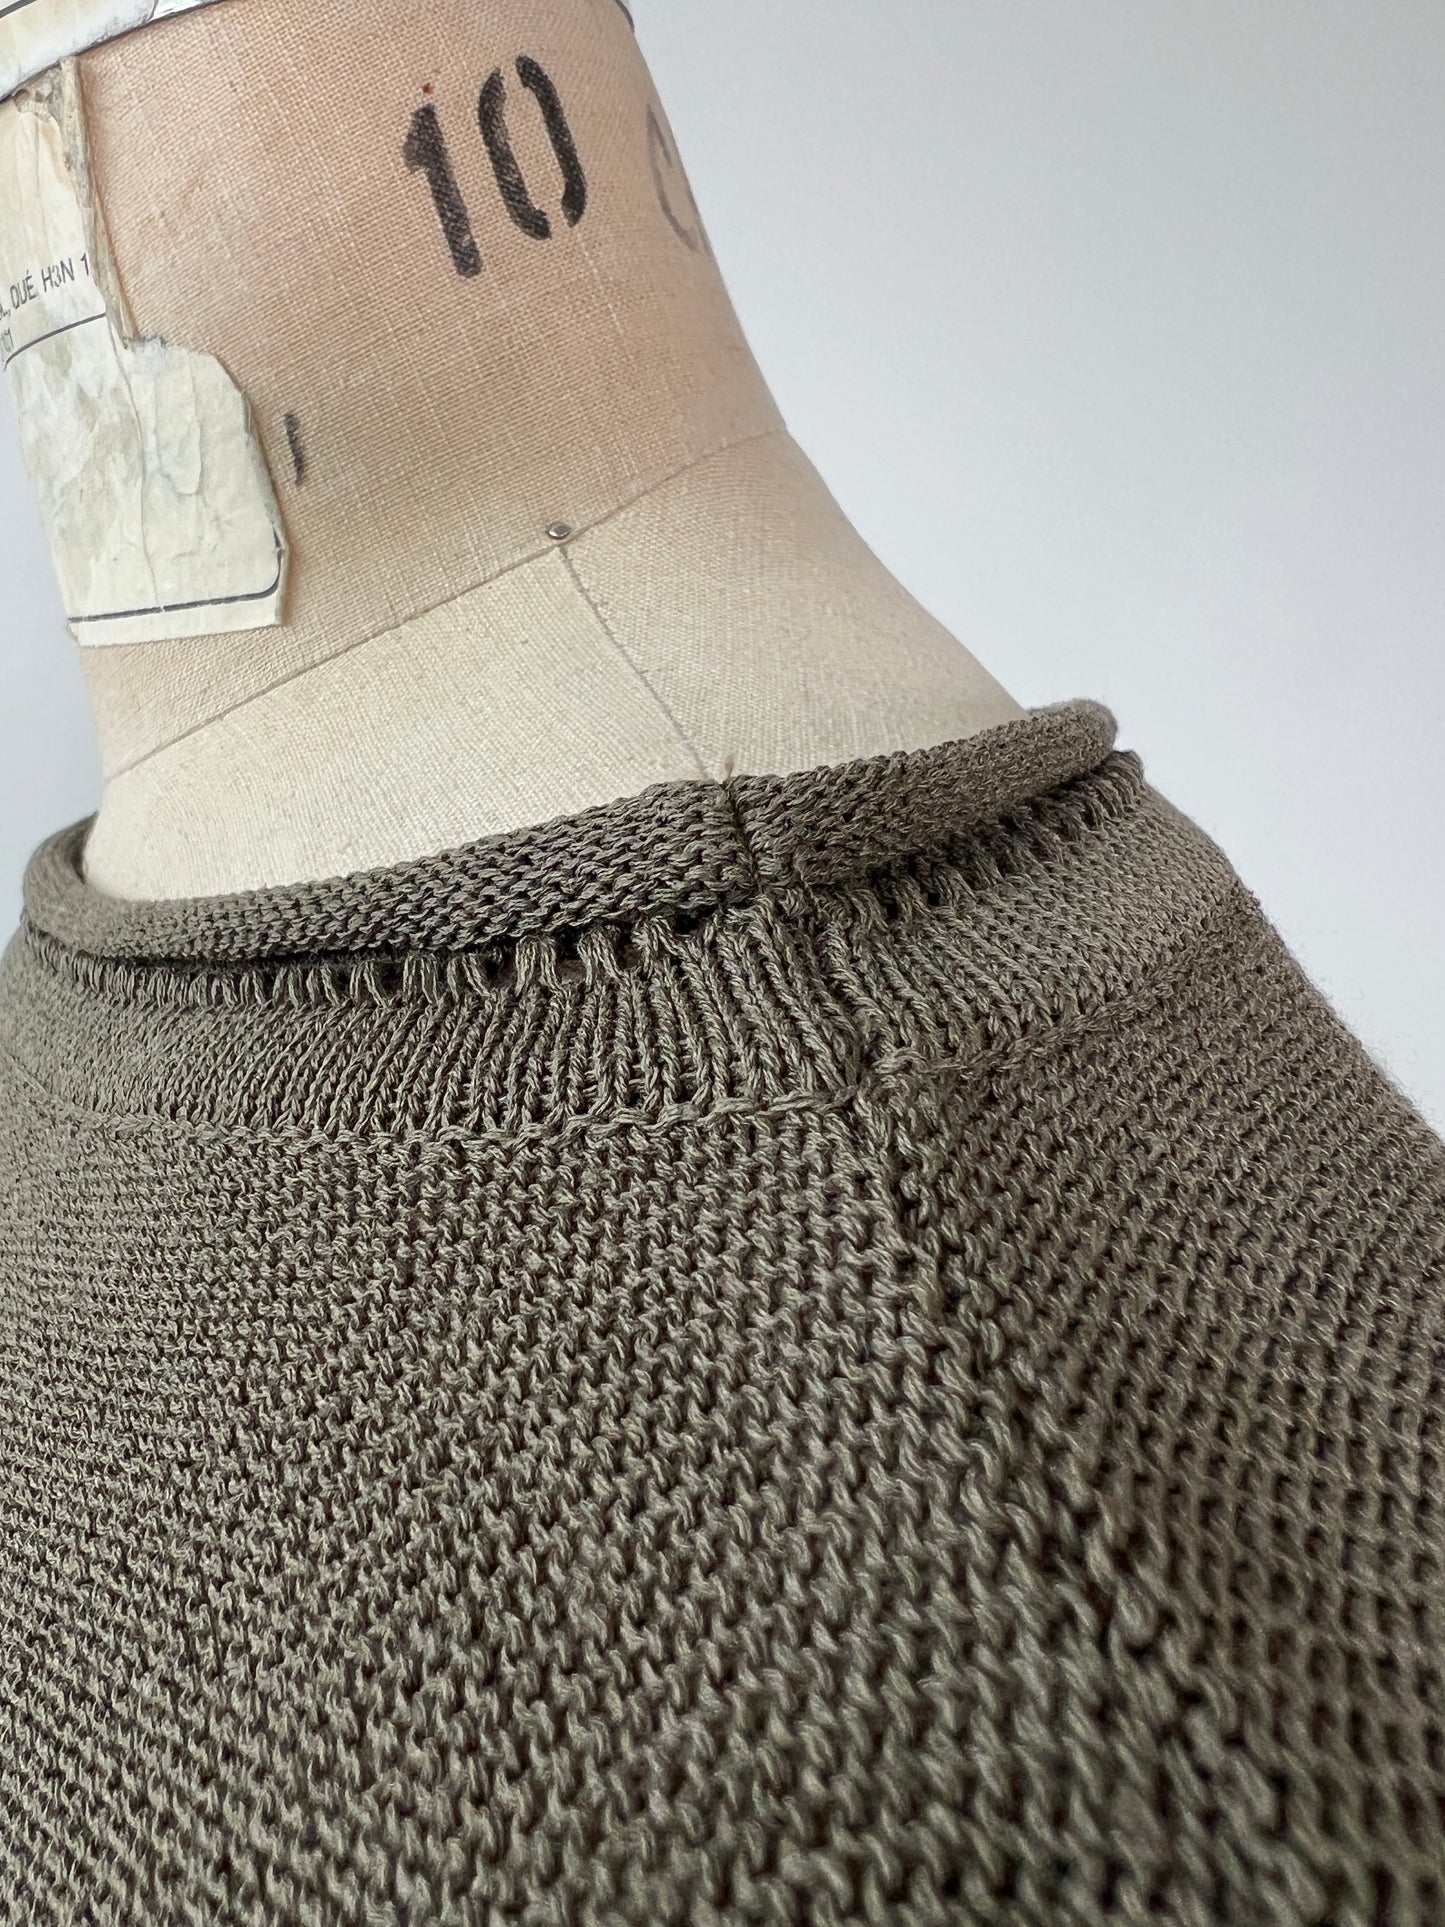 Chandail kaki écourté oversized en tricot lavable (XS à L)